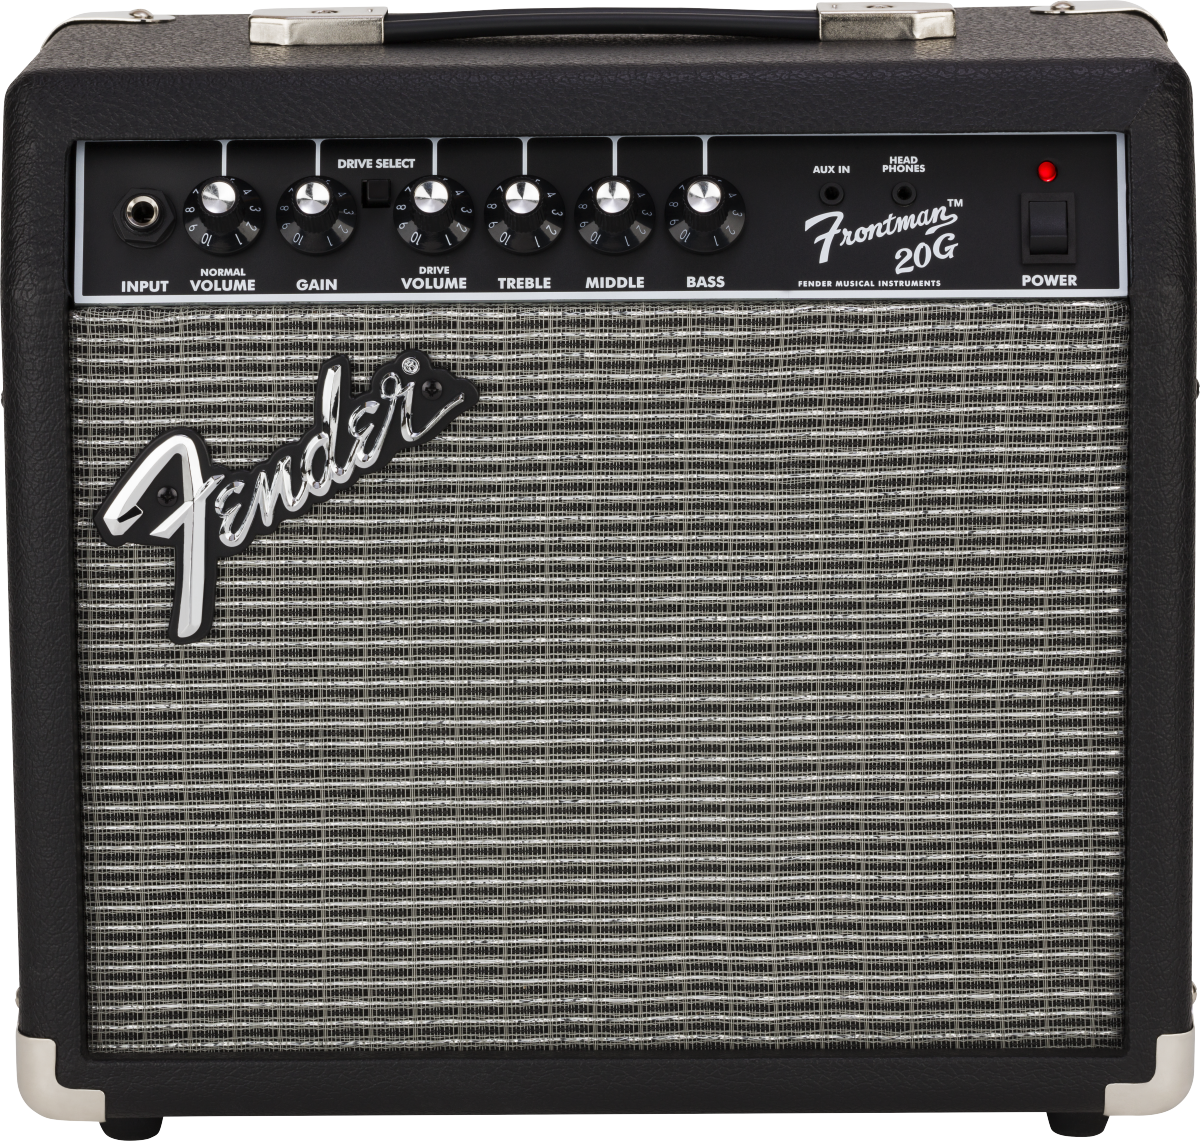 Fender Frontman 20G guitar amplifier